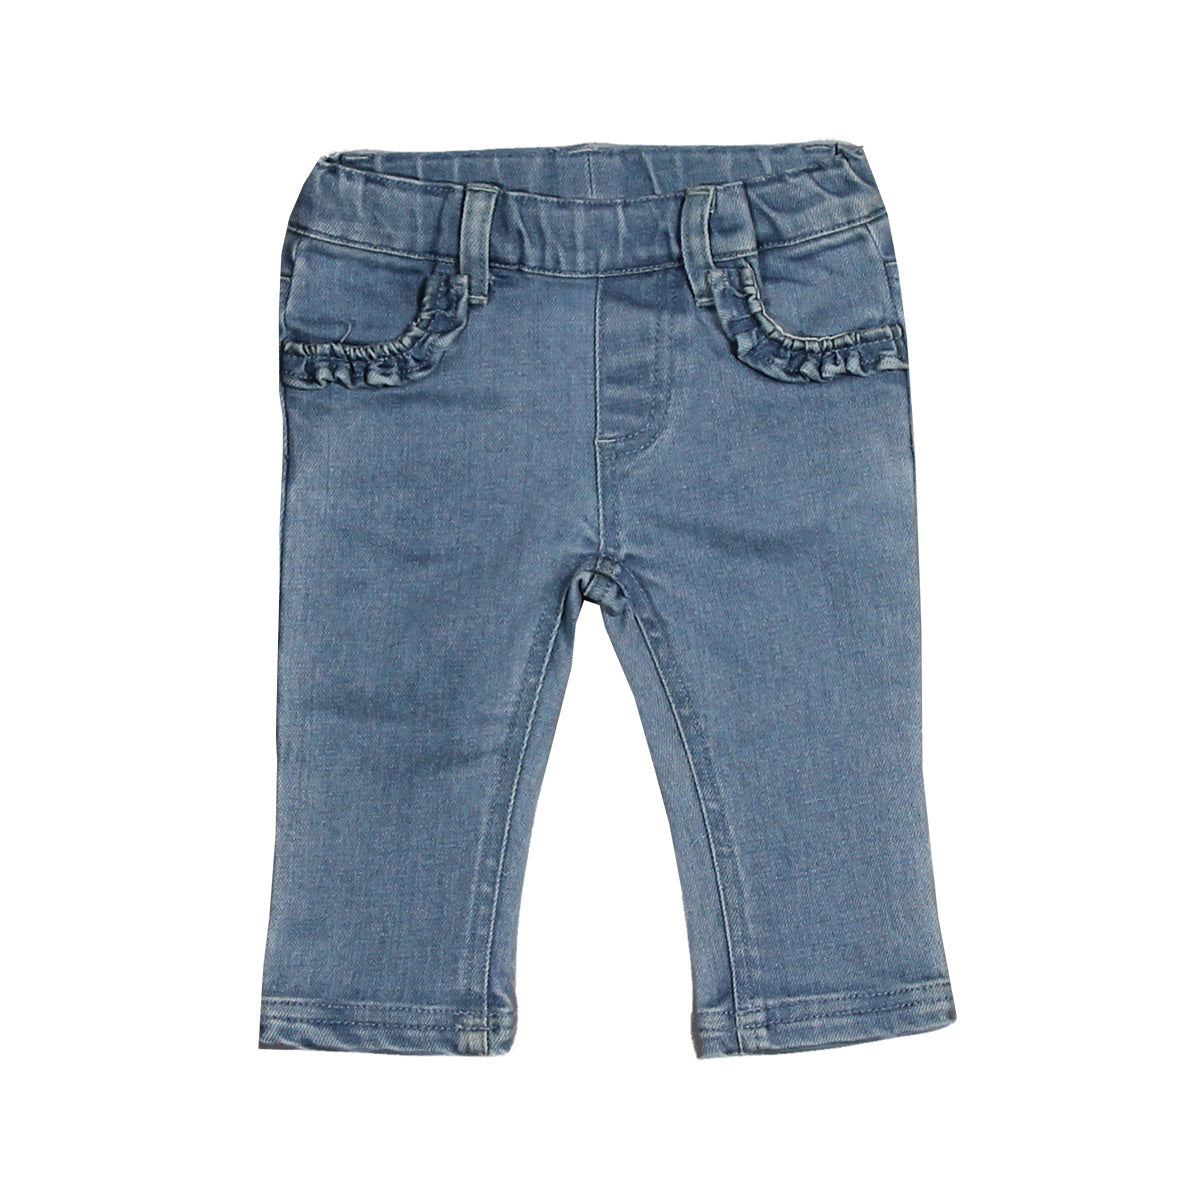 Pantaloni jeans della linea abbigliamento bambina Silvian Heach Kids, con modello regolare e voil...